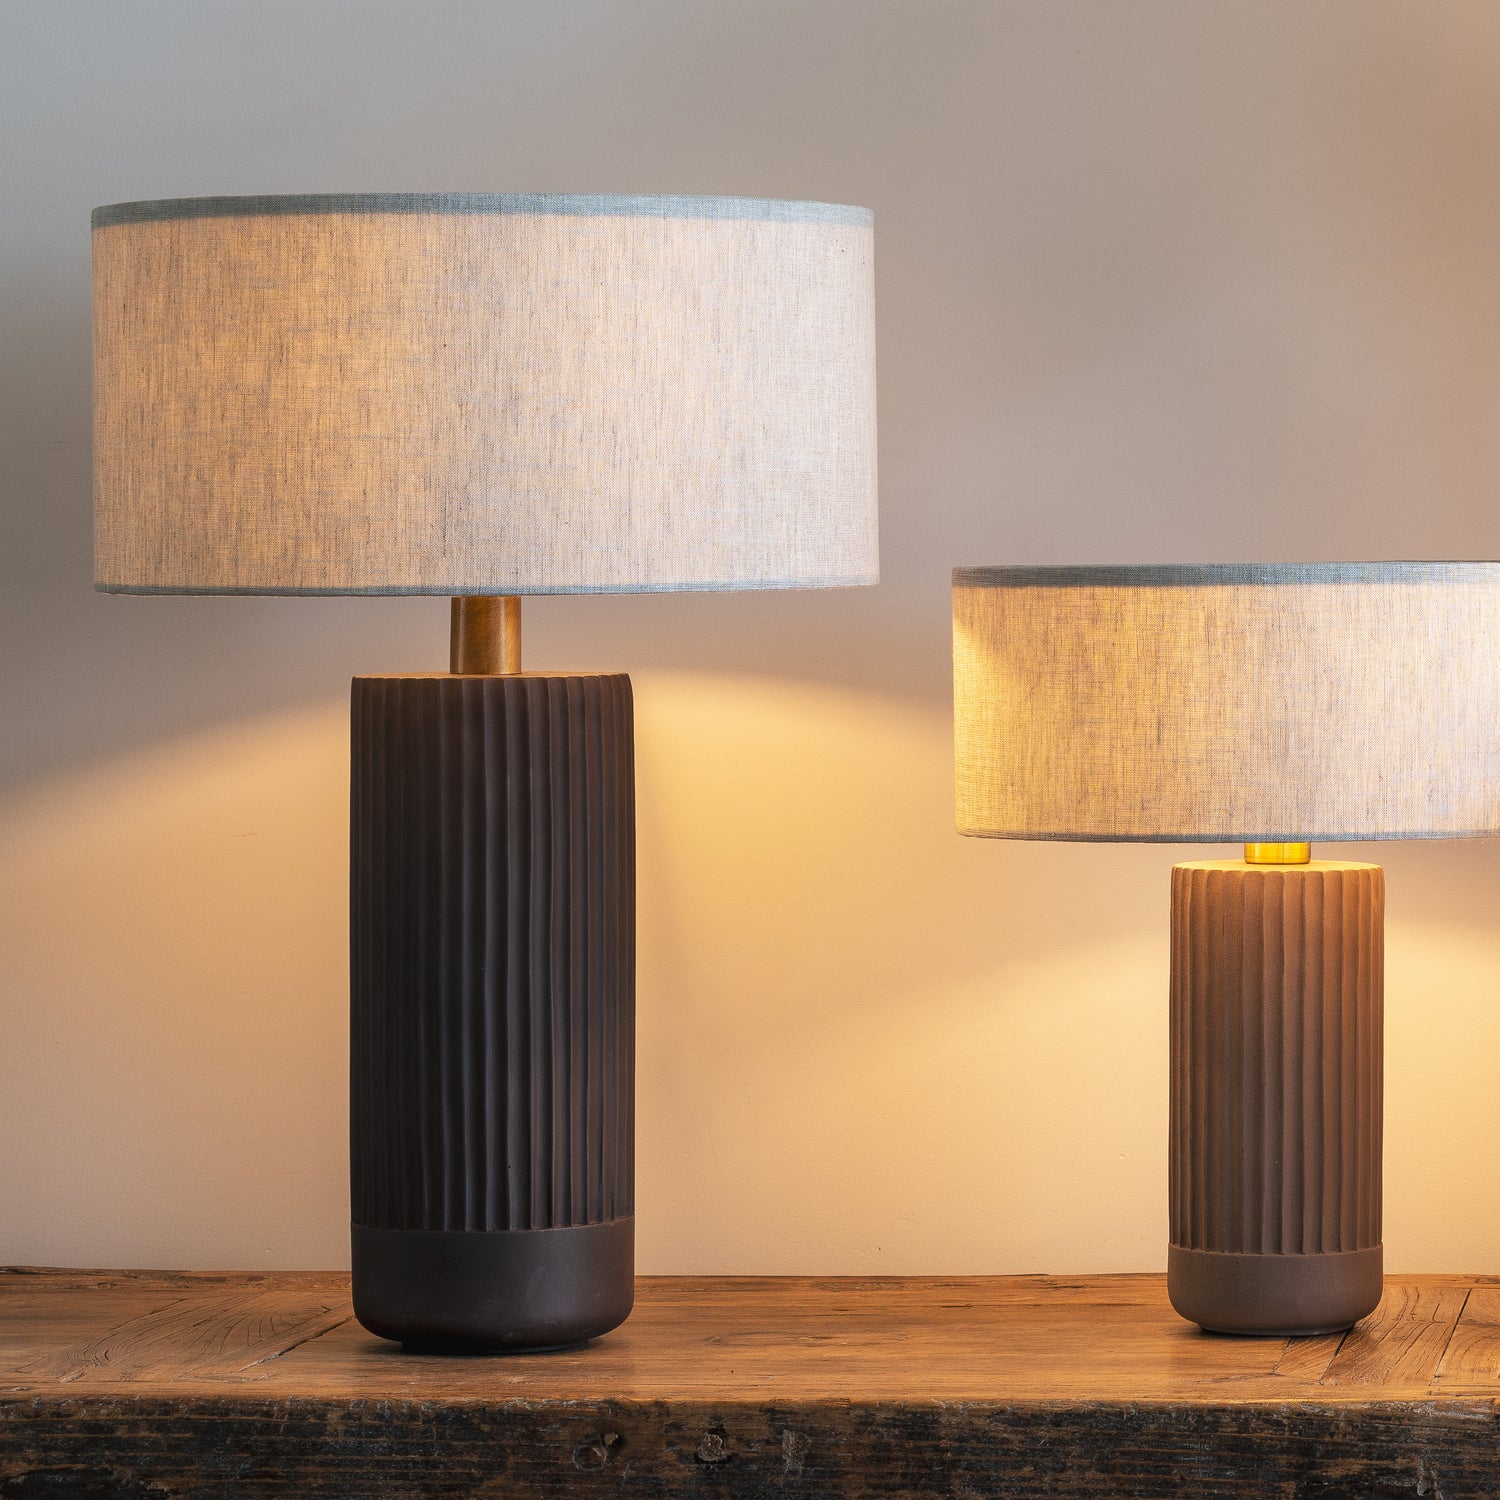 Nitara - chocolate ribbed concrete table lamp | Table Lamp | lightsandlamps.com